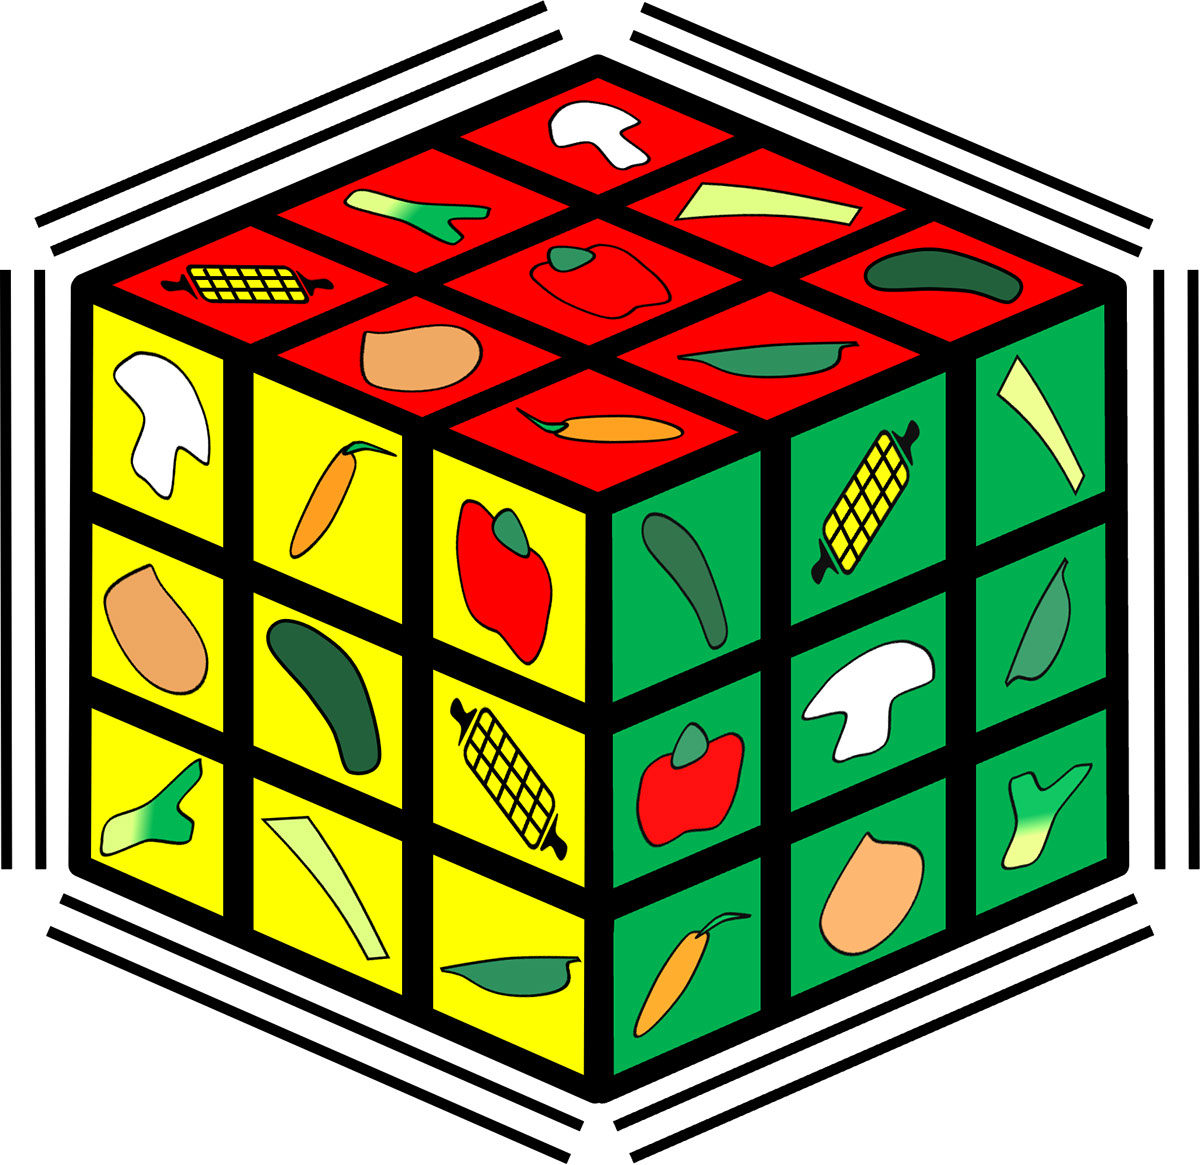 Vegetable puzzle cube logo rendition image